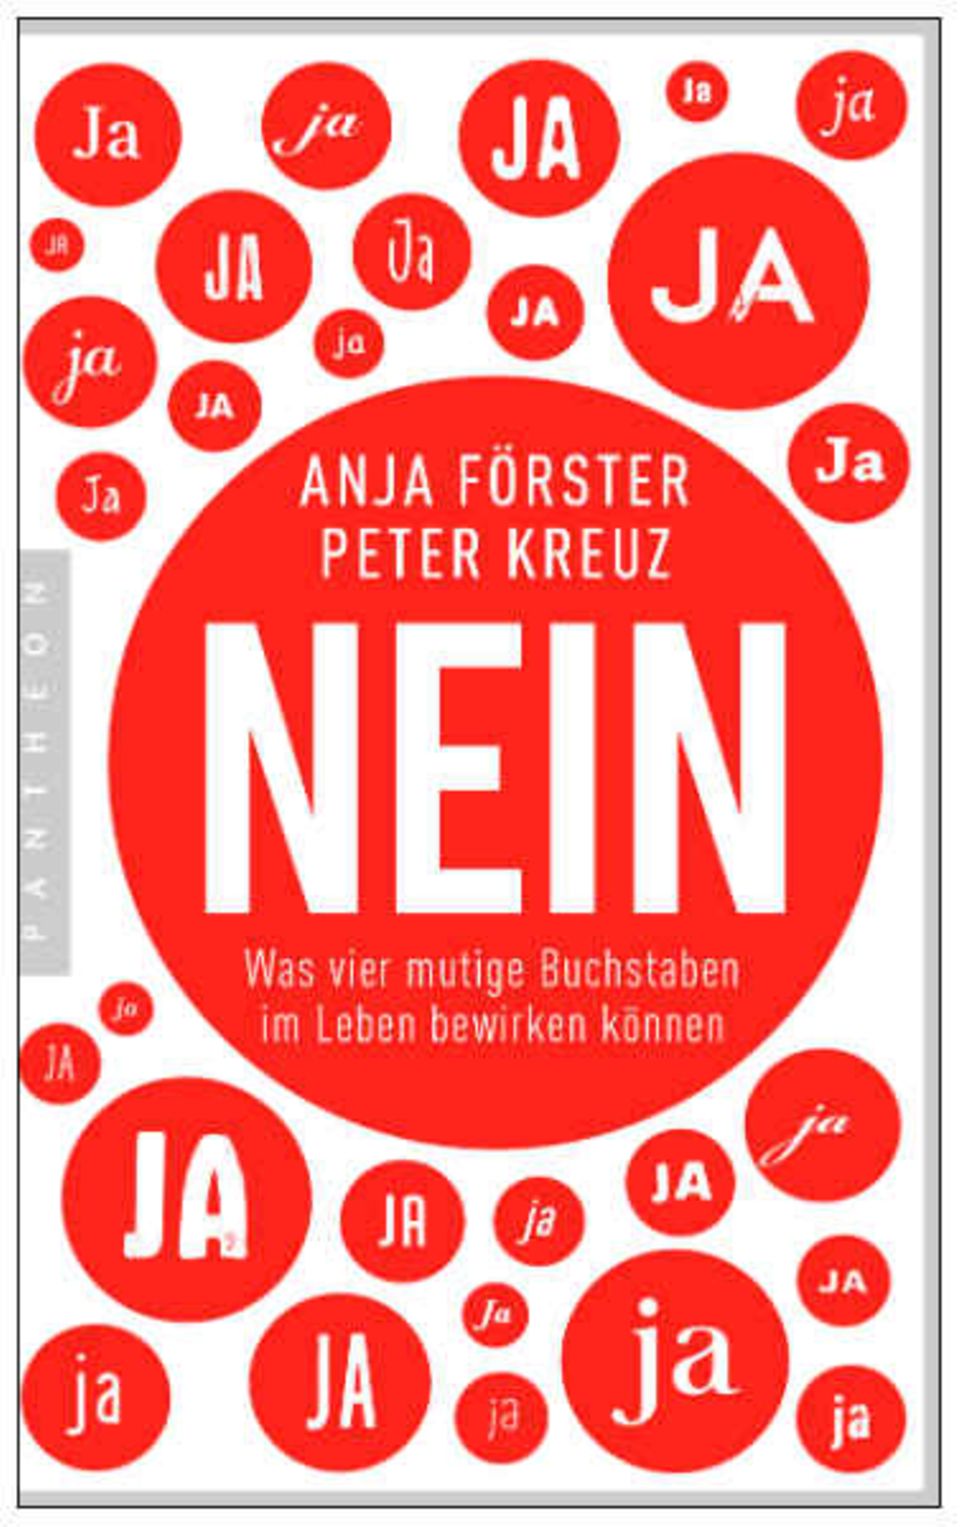 Das neue Buch von Anja Förster und Peter Kreuz